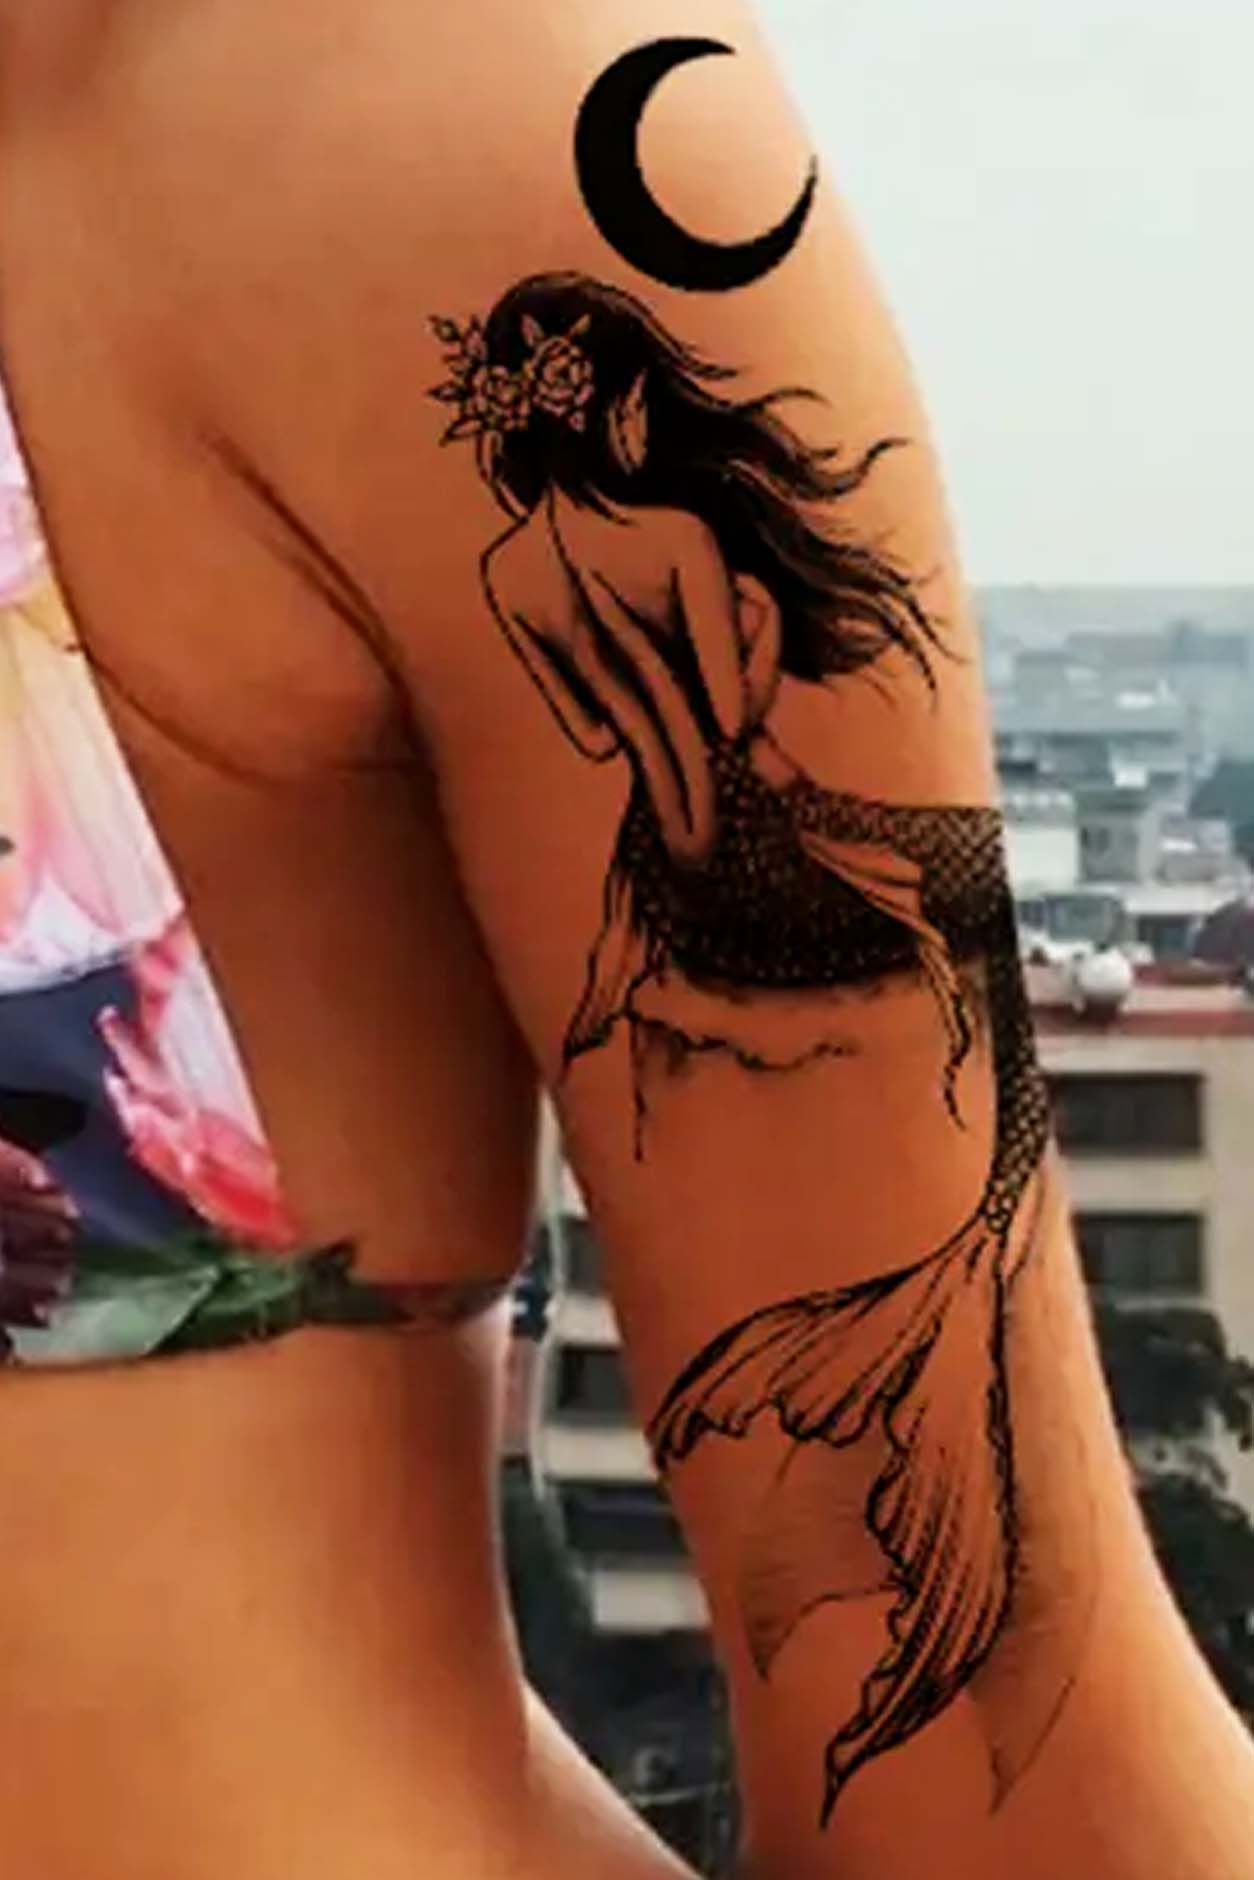 Mermaid tattoo, back tattoo, spine tattoo